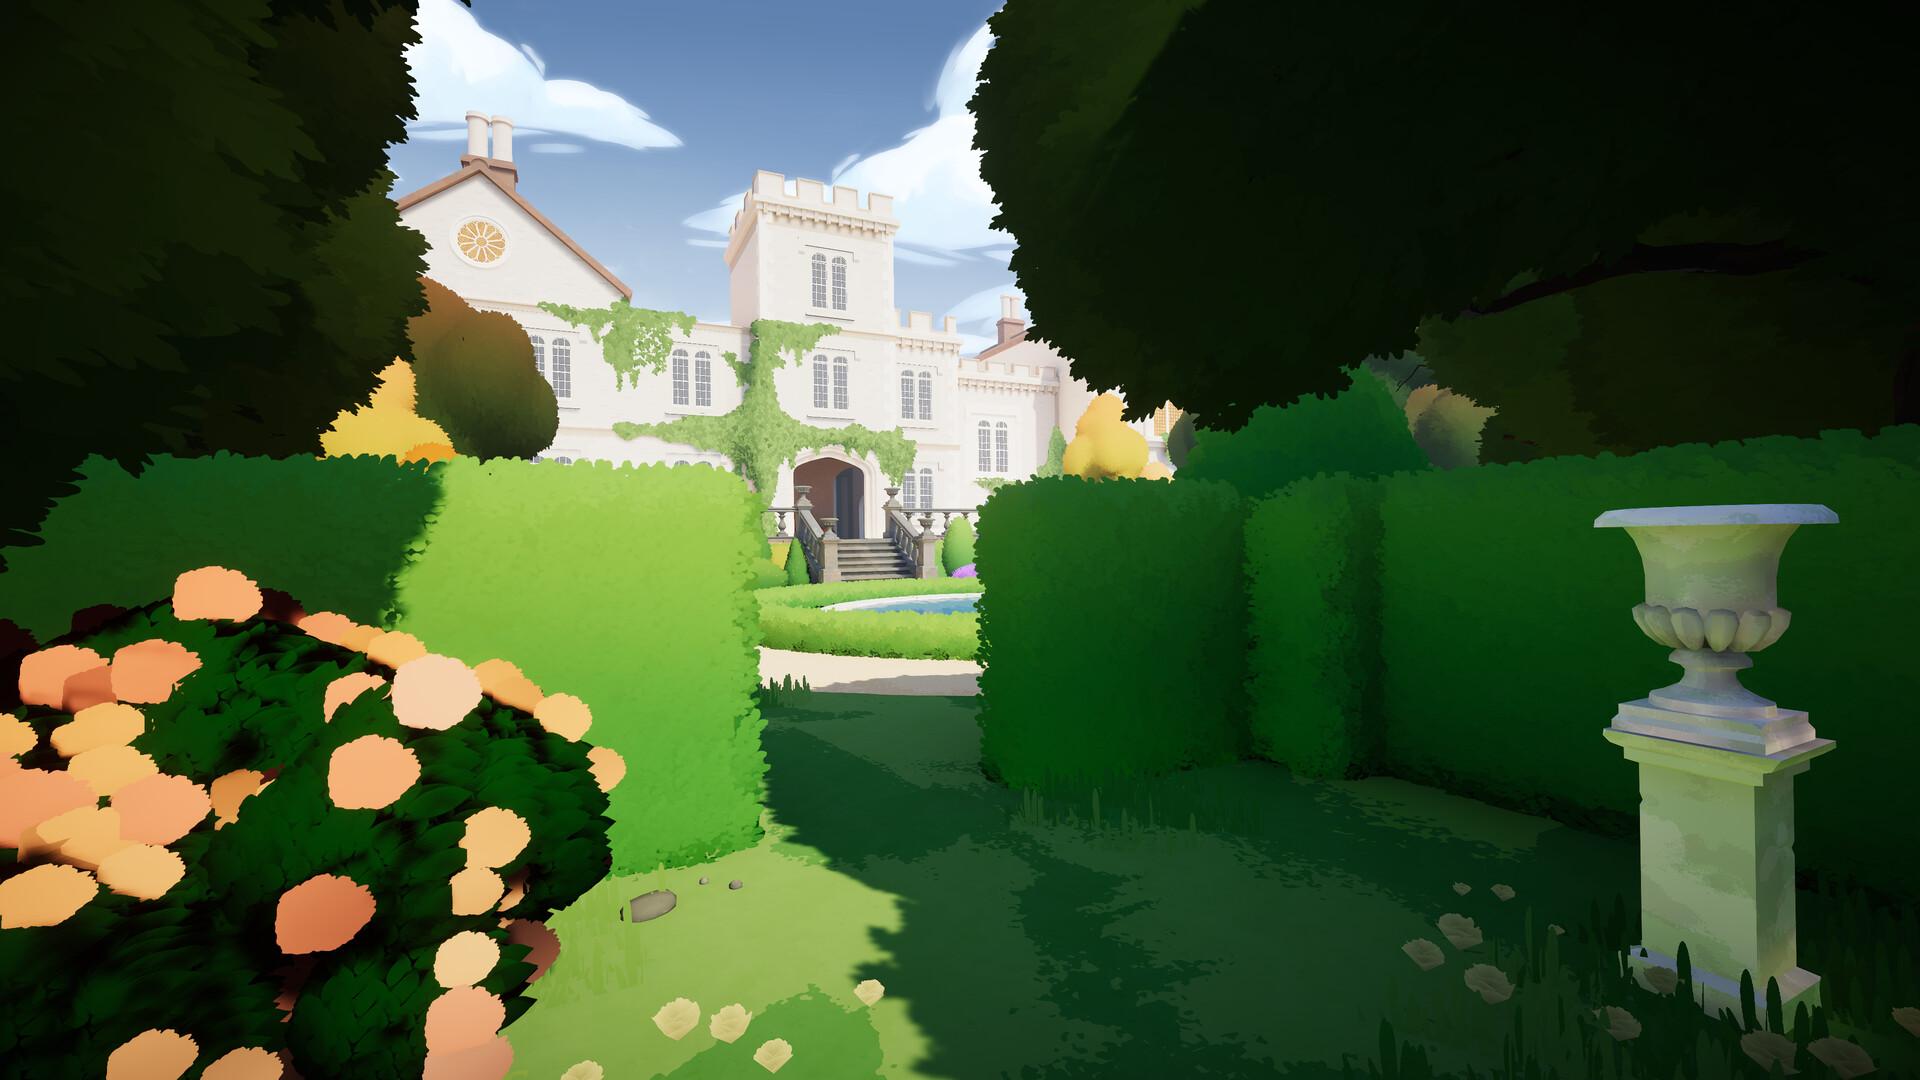 沉浸式模拟教育游戏《植物学庄园》 现已在新品节推出试玩Demo